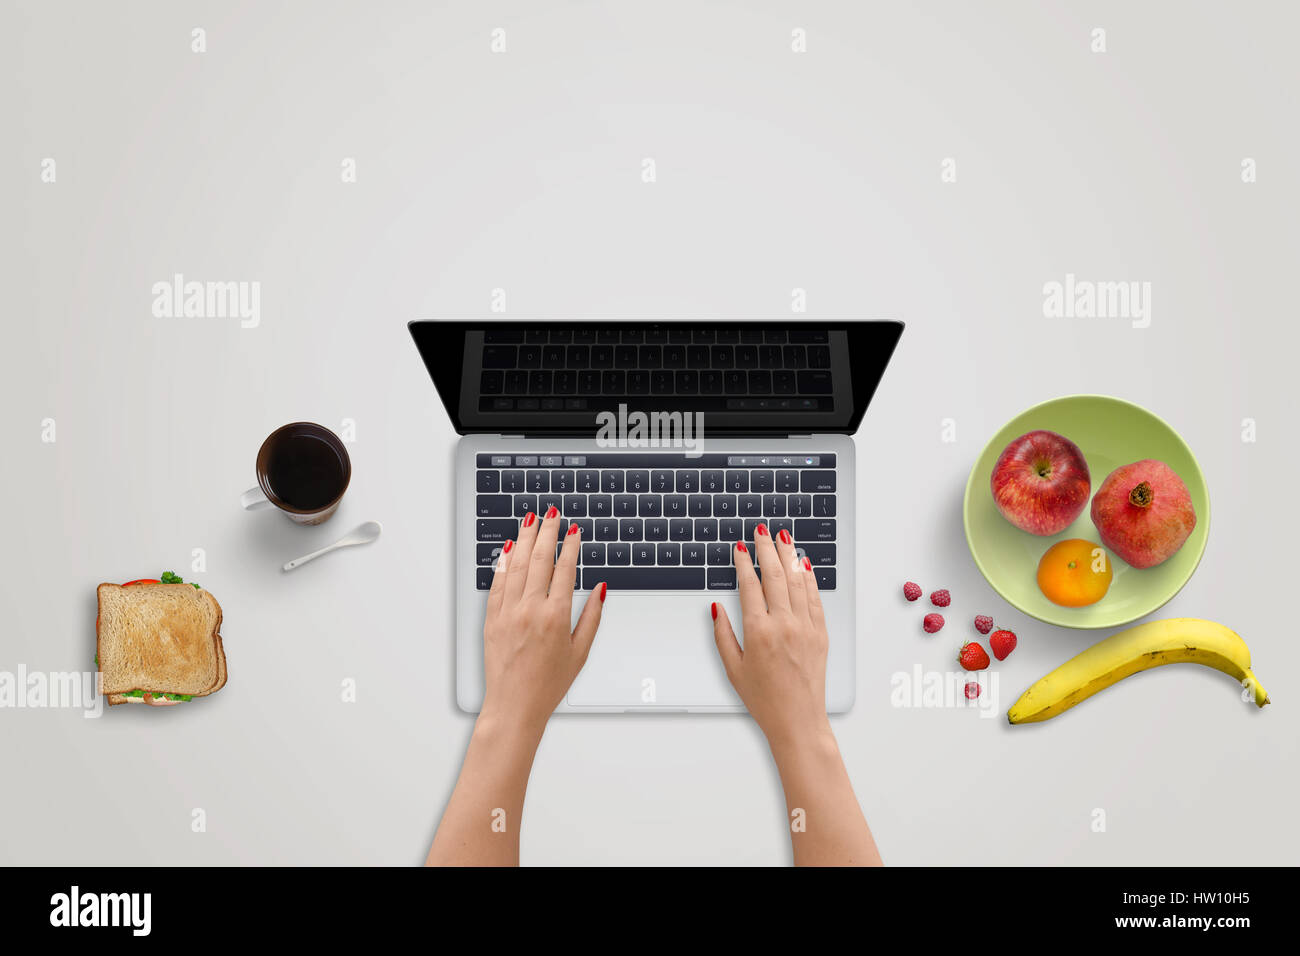 Femme travail sur ordinateur portable. Fruits frais et un sandwich à côté. L'alimentation saine sur office 24. Écran noir pour une maquette. Banque D'Images